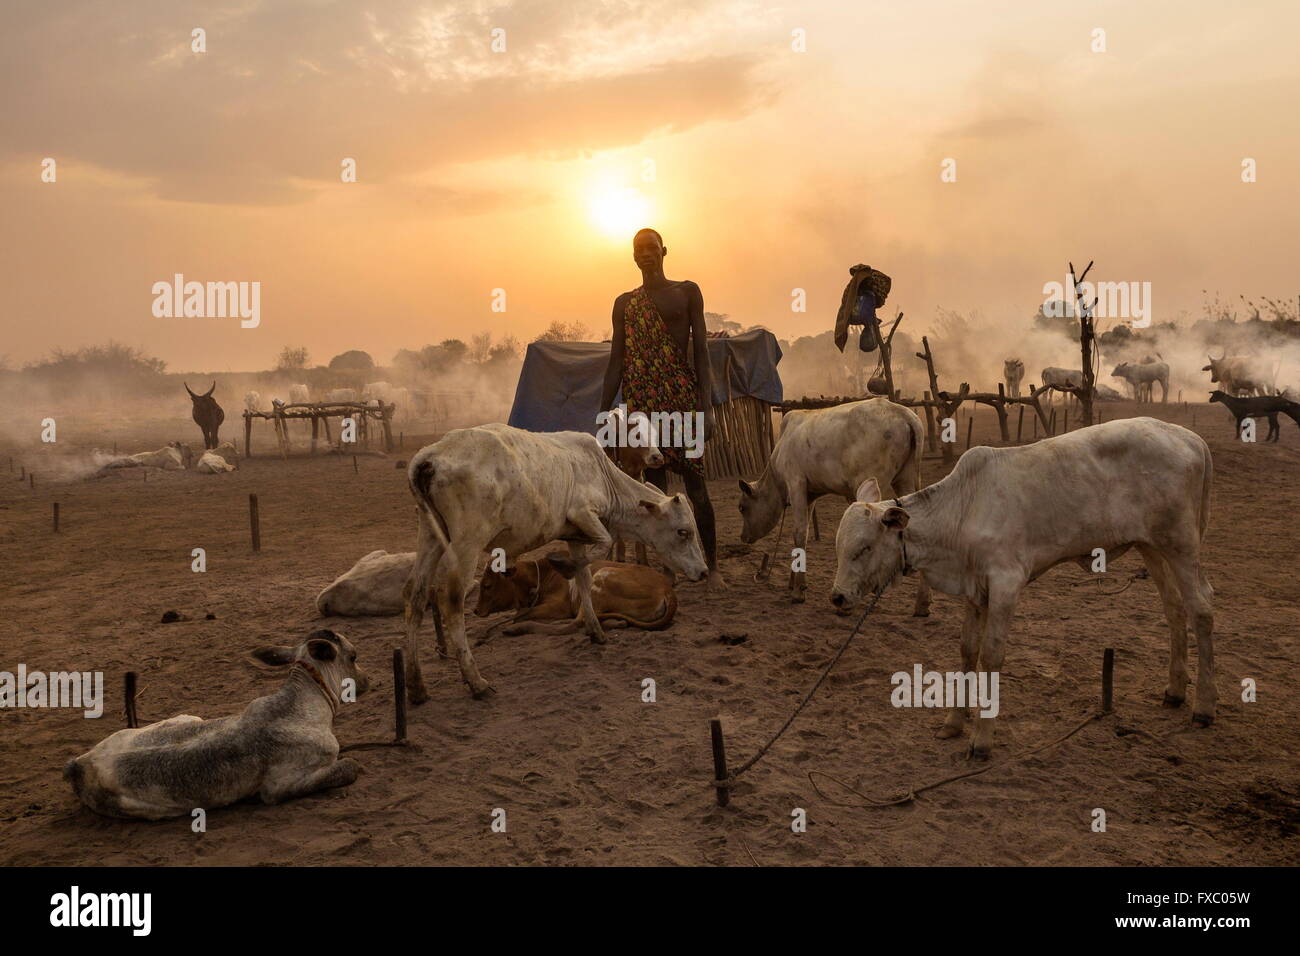 Le Soudan du Sud. Feb 22, 2016. Un homme Mundari vérifie que ses animaux sont bien intégré à pegs avant le coucher du soleil. Ankole-Watusi, également connu sous le nom de Longhorn Ankole, ou "bétail de Kings' est un livre de 900 à 1 600 bovins de race Landrace Originaire de l'Afrique avec des cornes qui peuvent atteindre jusqu'à 8 pi de hauteur. © Tarek Zaidi/ZUMA/ZUMAPRESS.com/Alamy fil Live News Banque D'Images